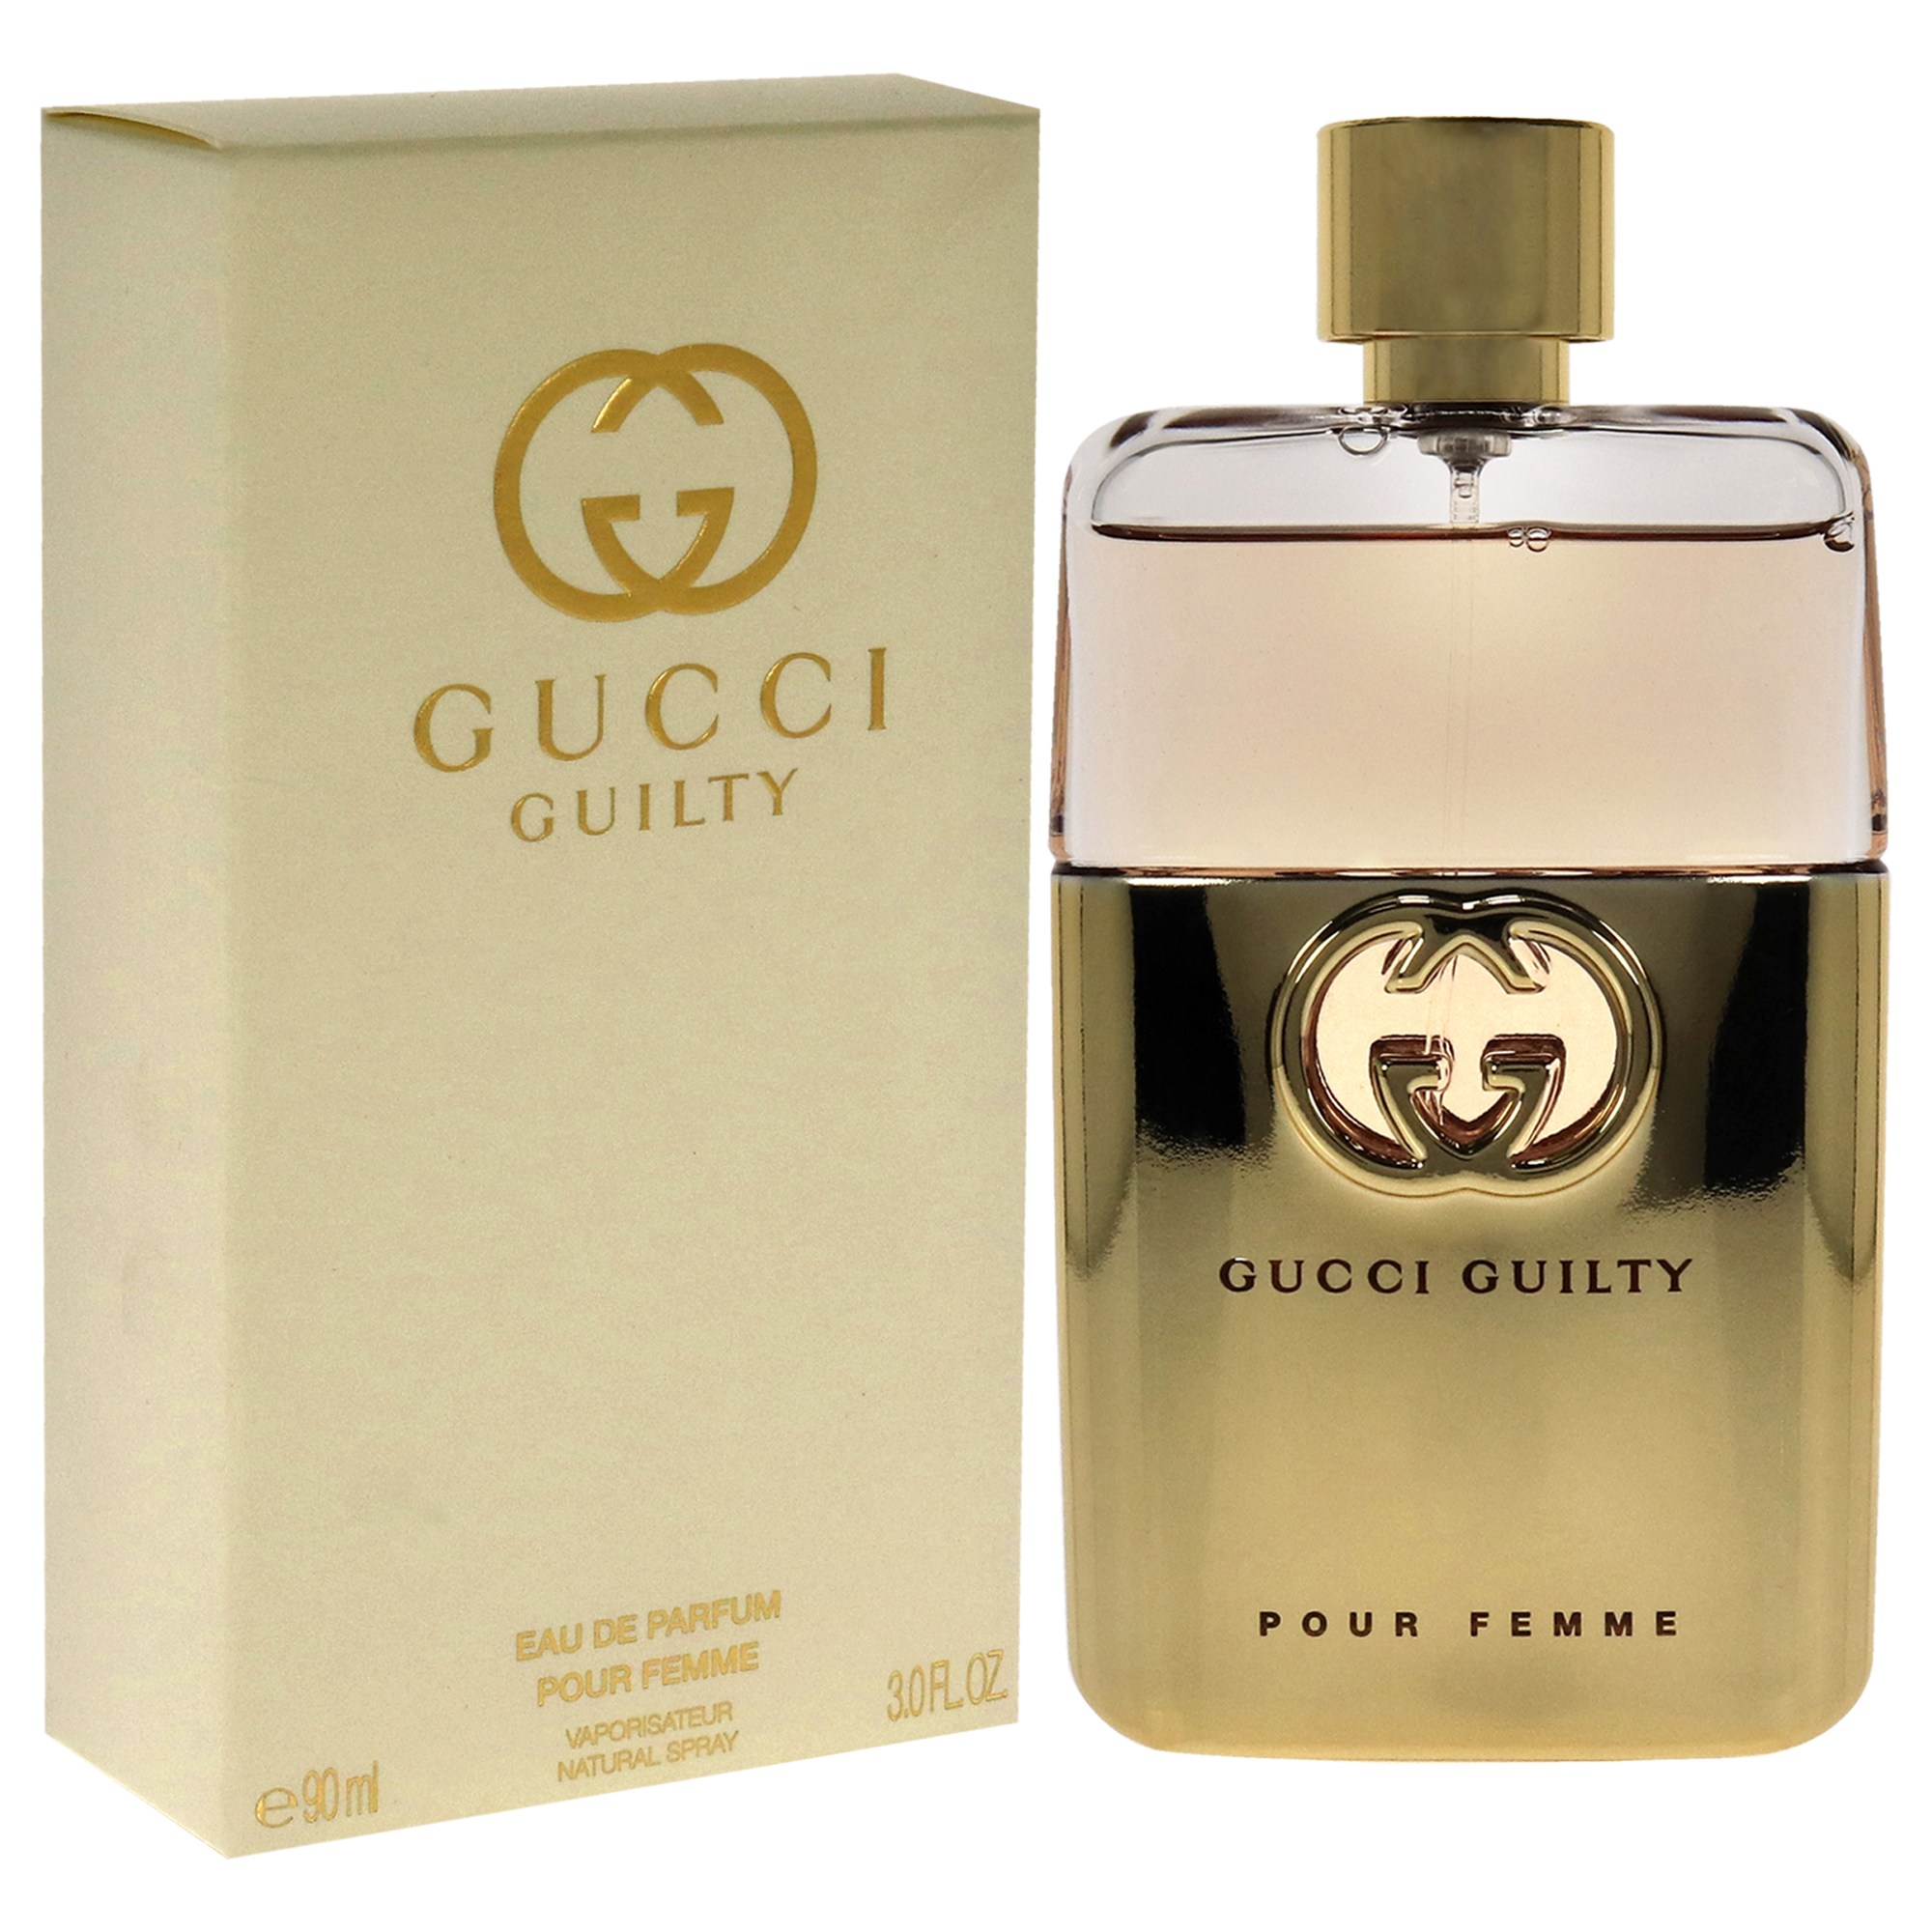 Gucci Guilty Pour Femme by Gucci Eau De Parfum Spray 3 oz for Women - image 3 of 5